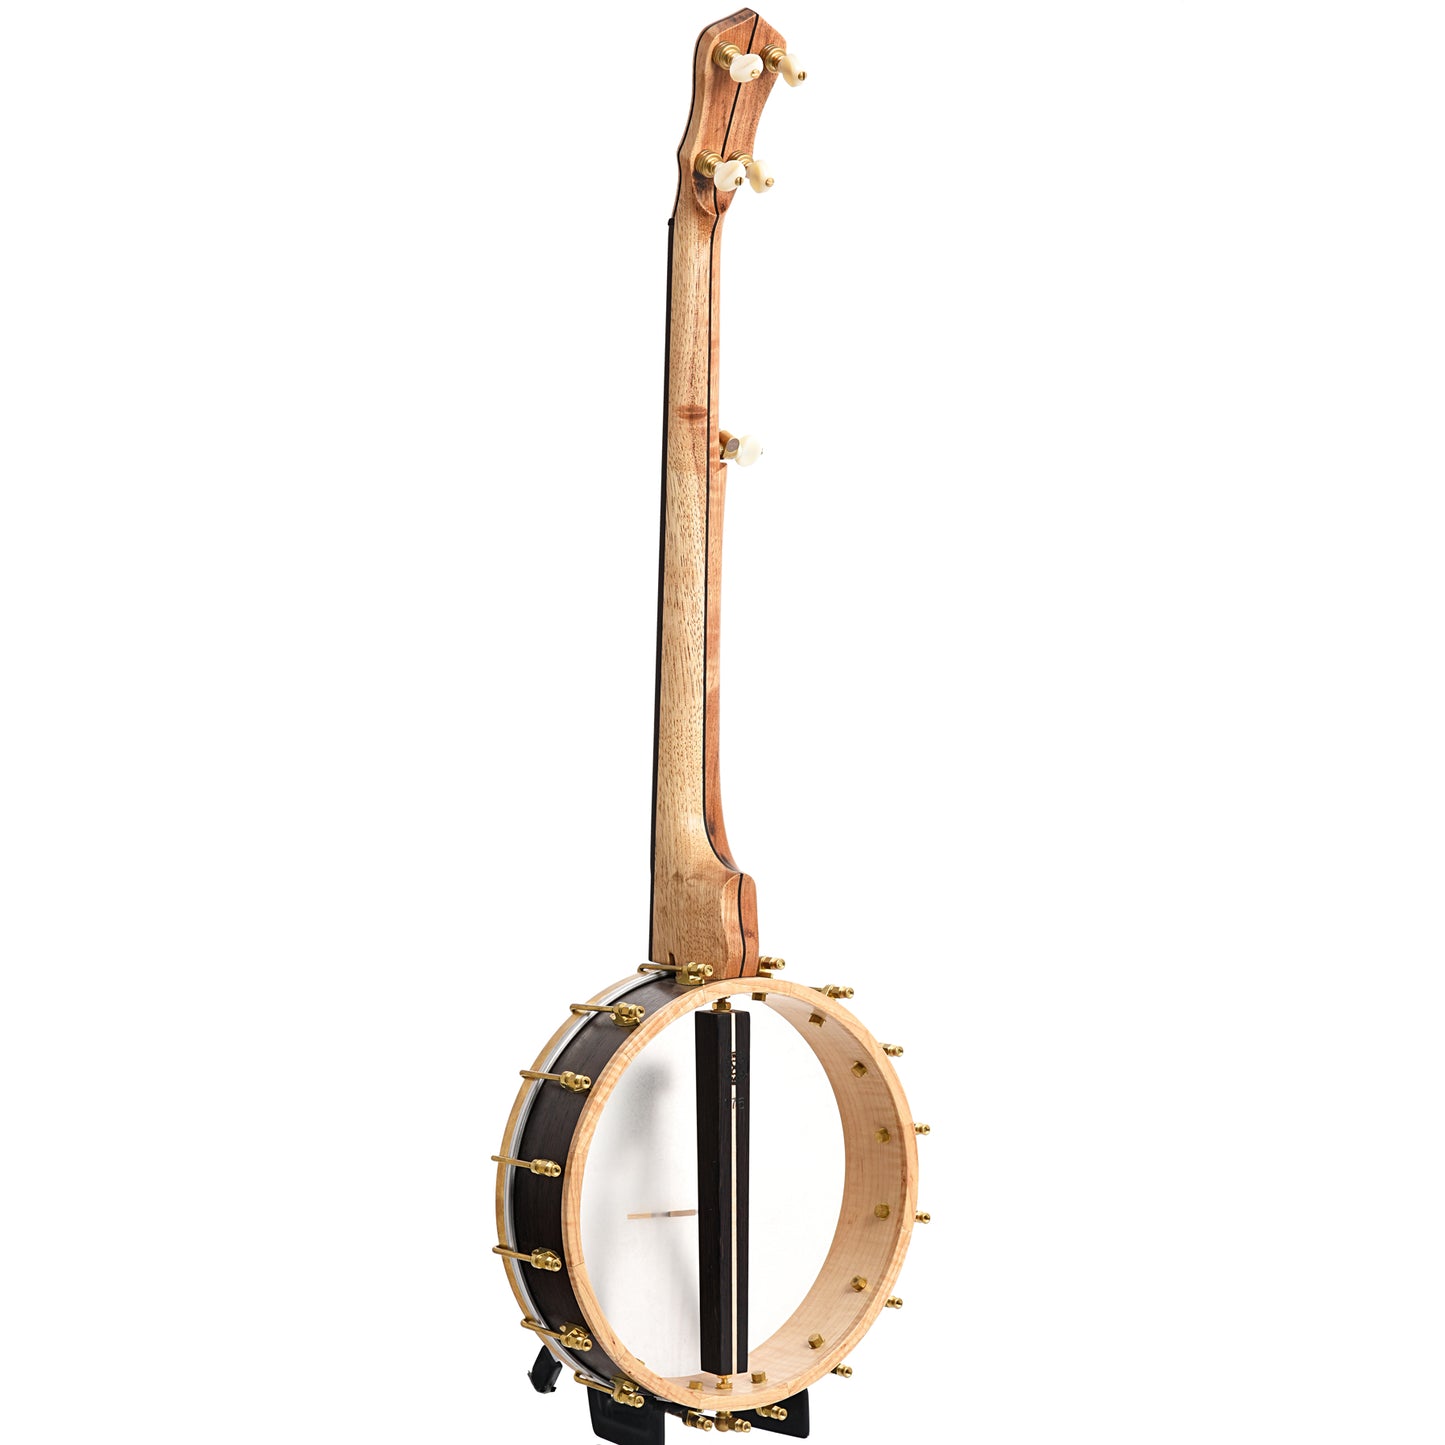 Image 13 of Dogwood Banjo Co. 11" Openback Banjo, No. 175 - SKU# DW175 : Product Type Open Back Banjos : Elderly Instruments